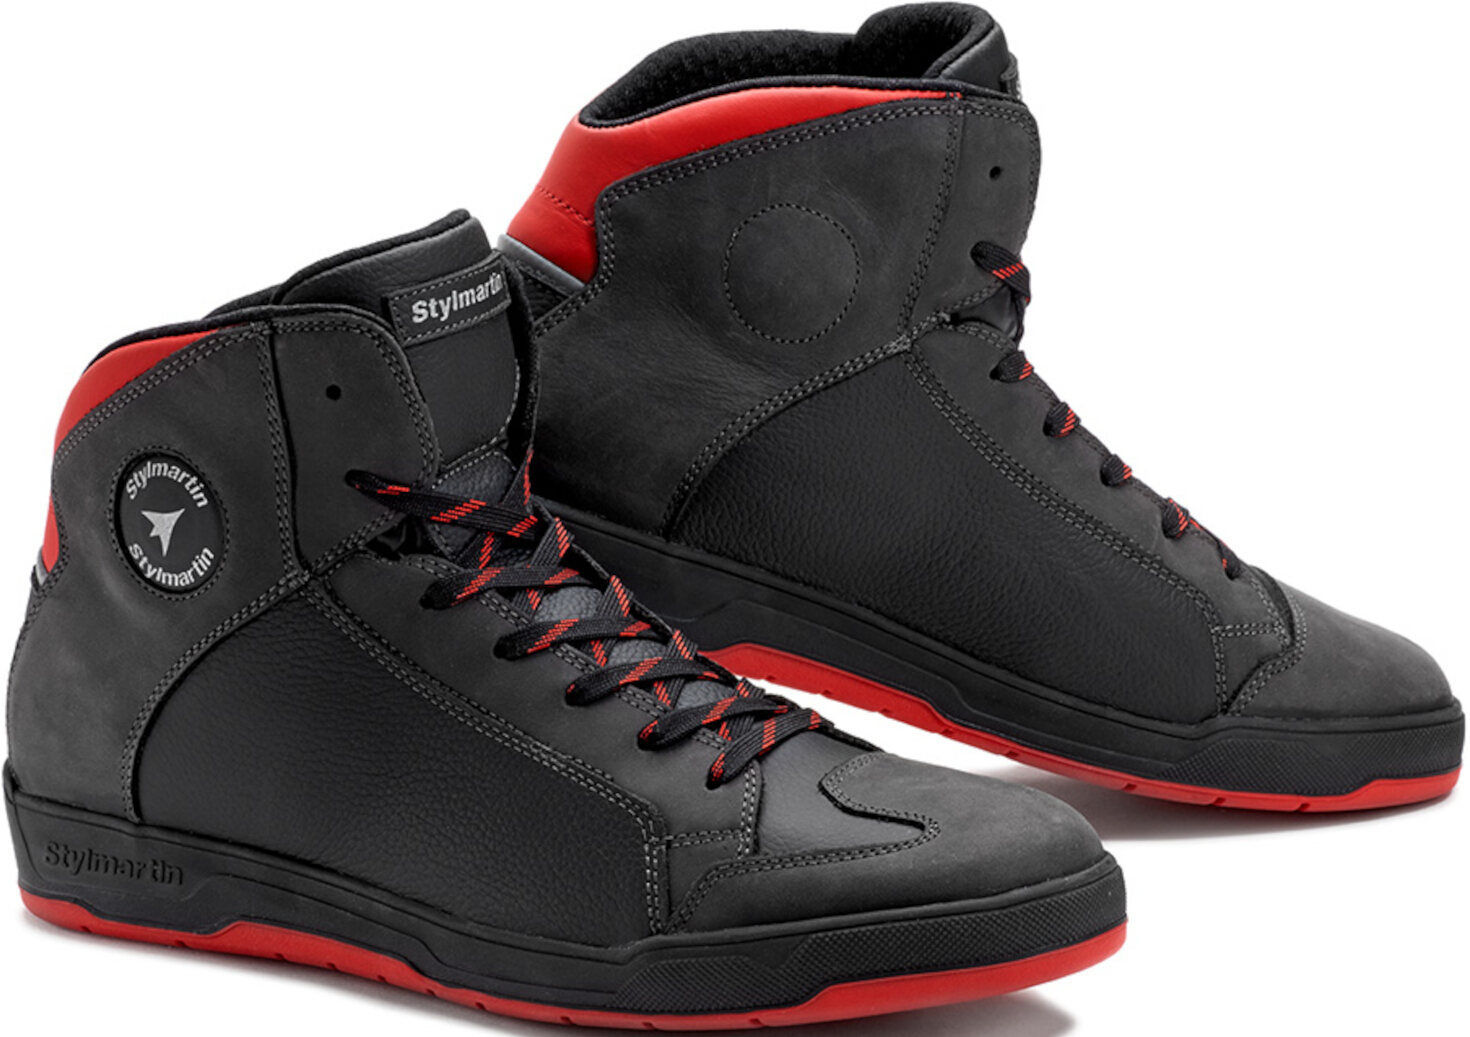 Stylmartin Double Zapatos de motocicleta impermeables - Negro Rojo (41)